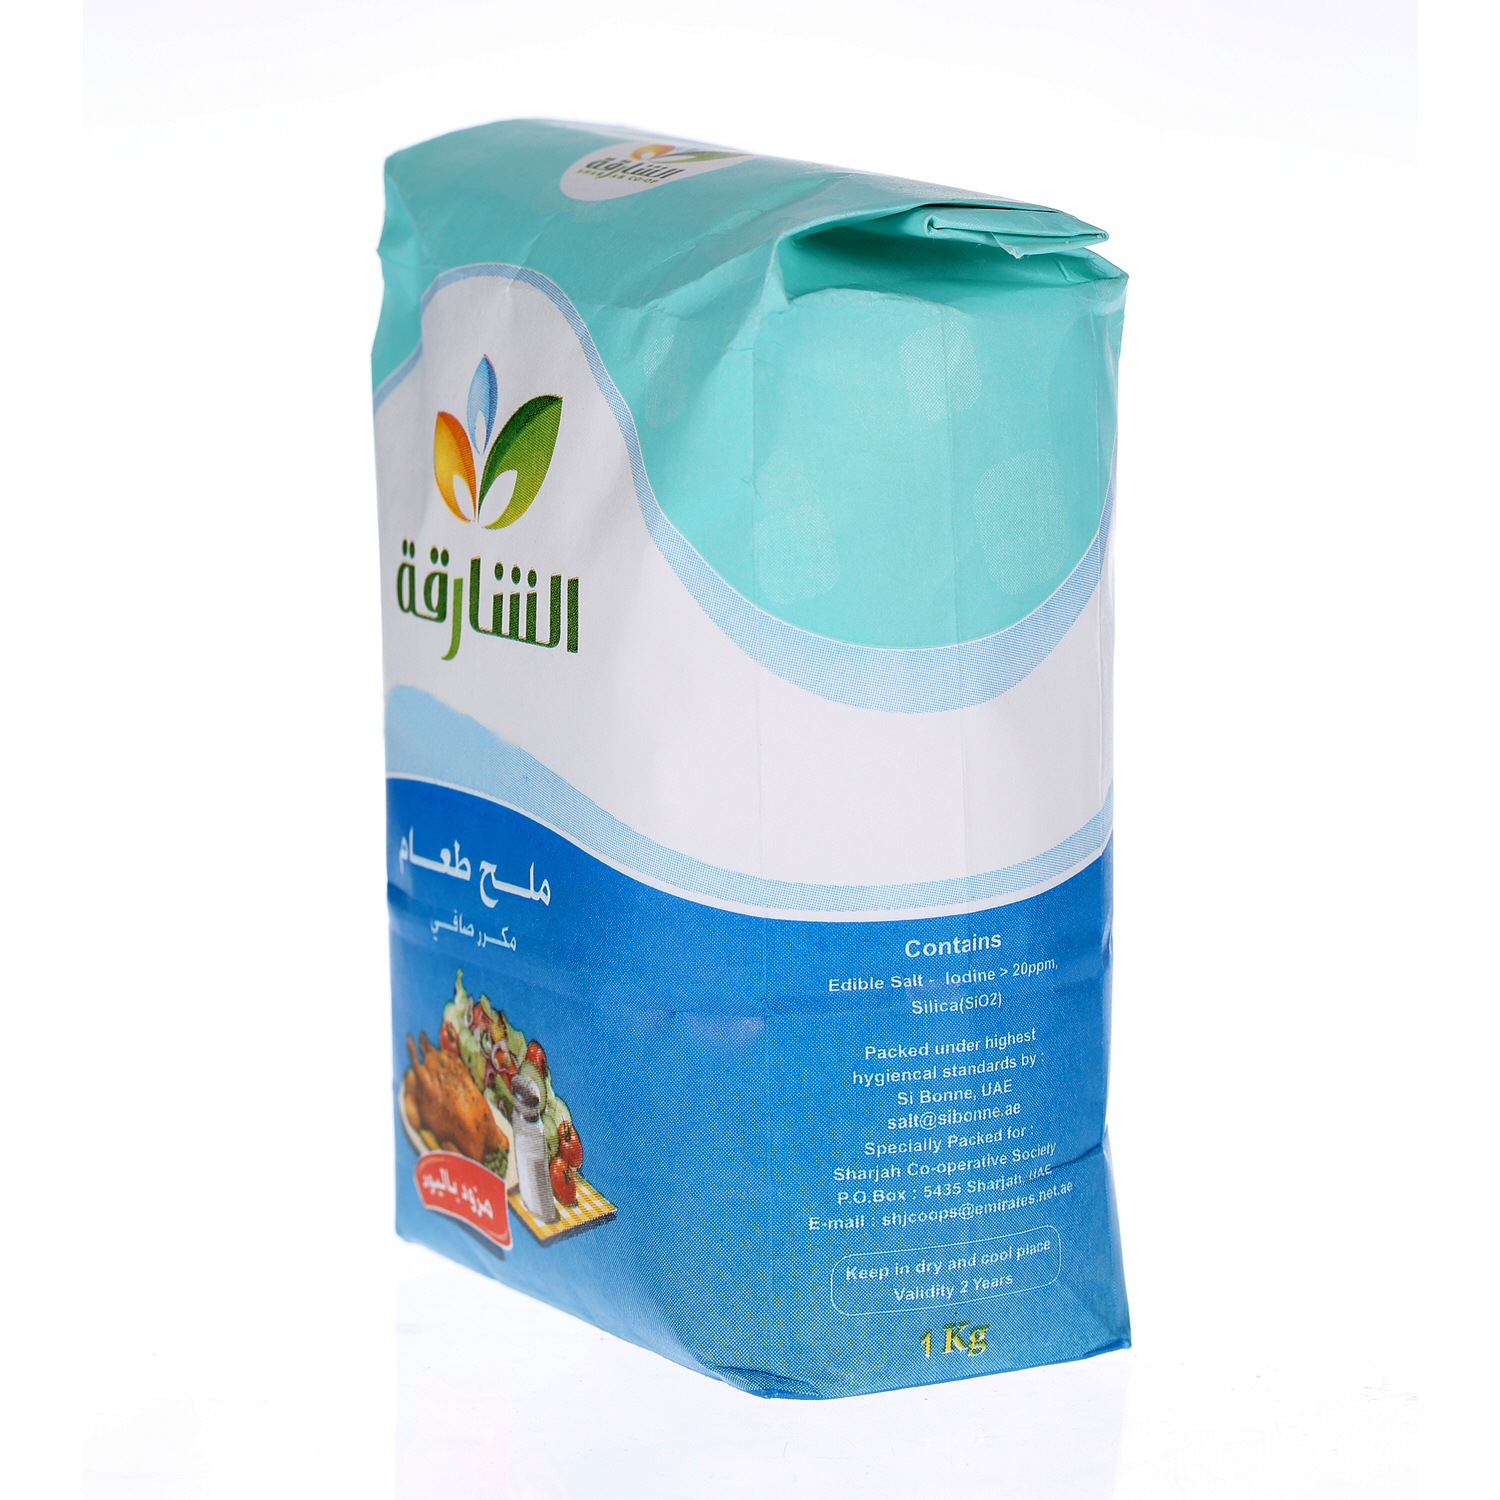 Sharjah Coop Iodized Salt Packet 1Kg